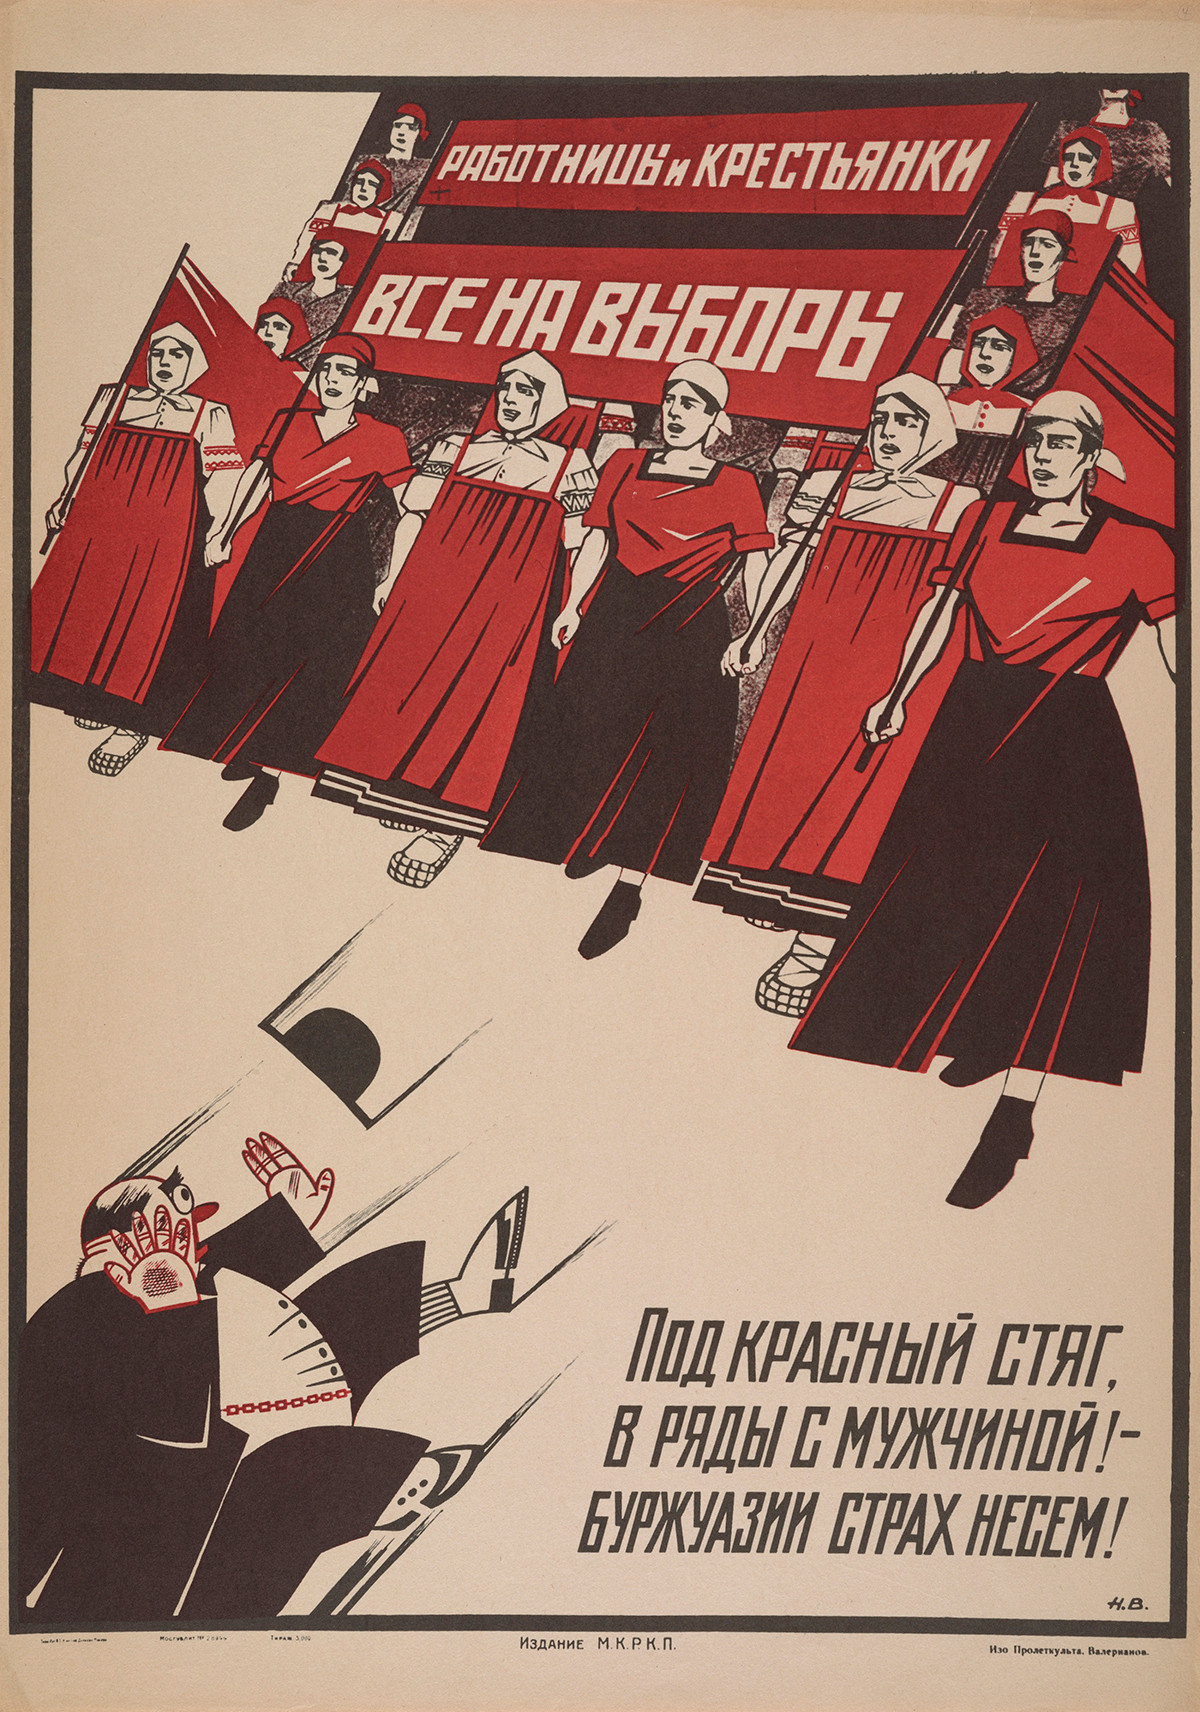 „Arbeiterinnen und Bäuerinnen! An die Wahlurnen! Versammelt euch unter der roten Fahne zusammen mit den Männern – wir lehren der Bourgeoisie das Fürchten!“